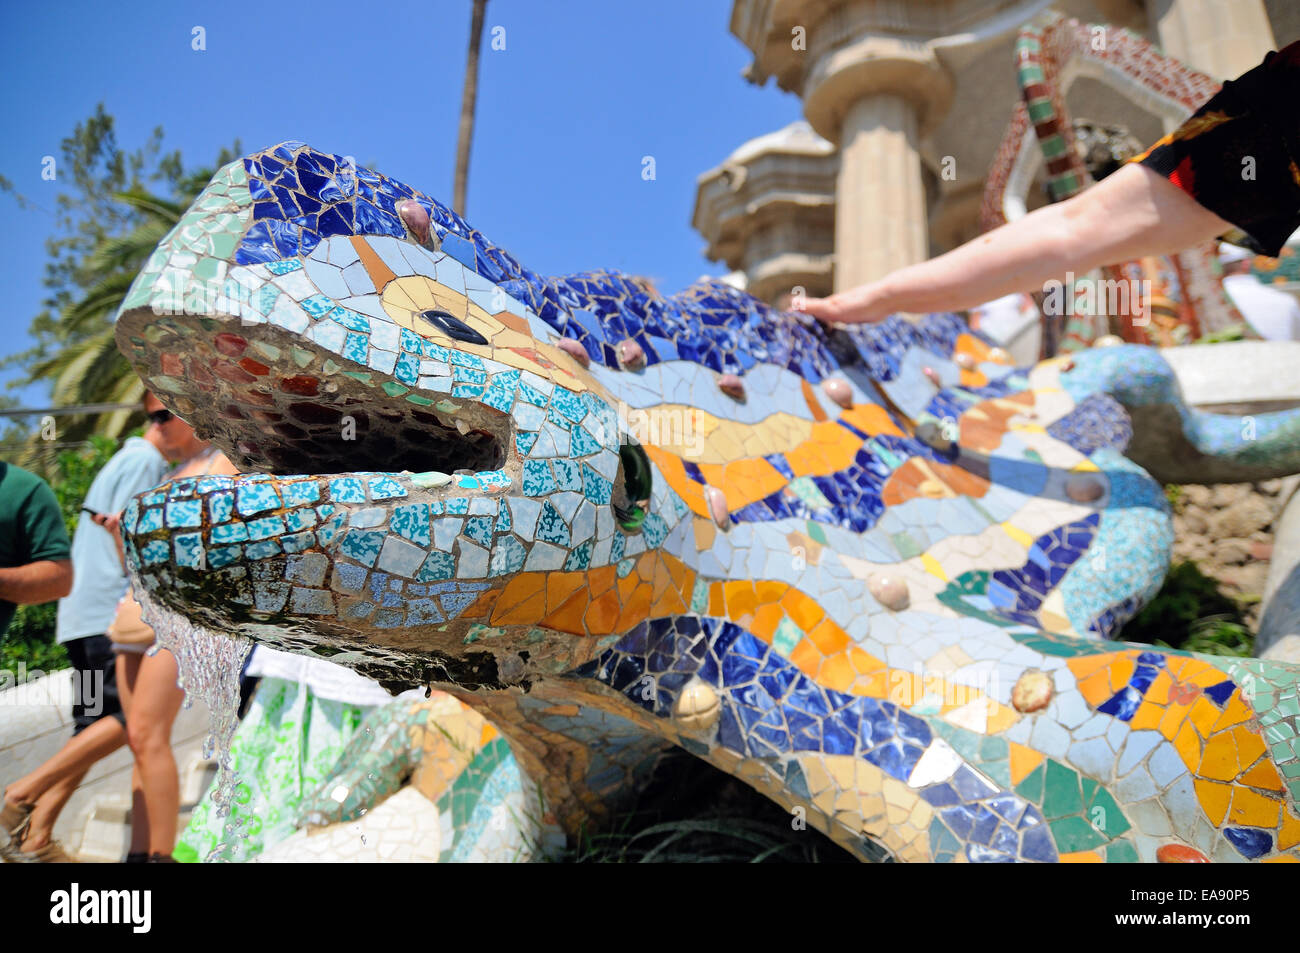 Barcellona - Luglio 12: persone toccare il drago disegnato da Gaudi presso il Parco Guell sulla luglio 12, 2013 a Barcellona, Spagna. Foto Stock